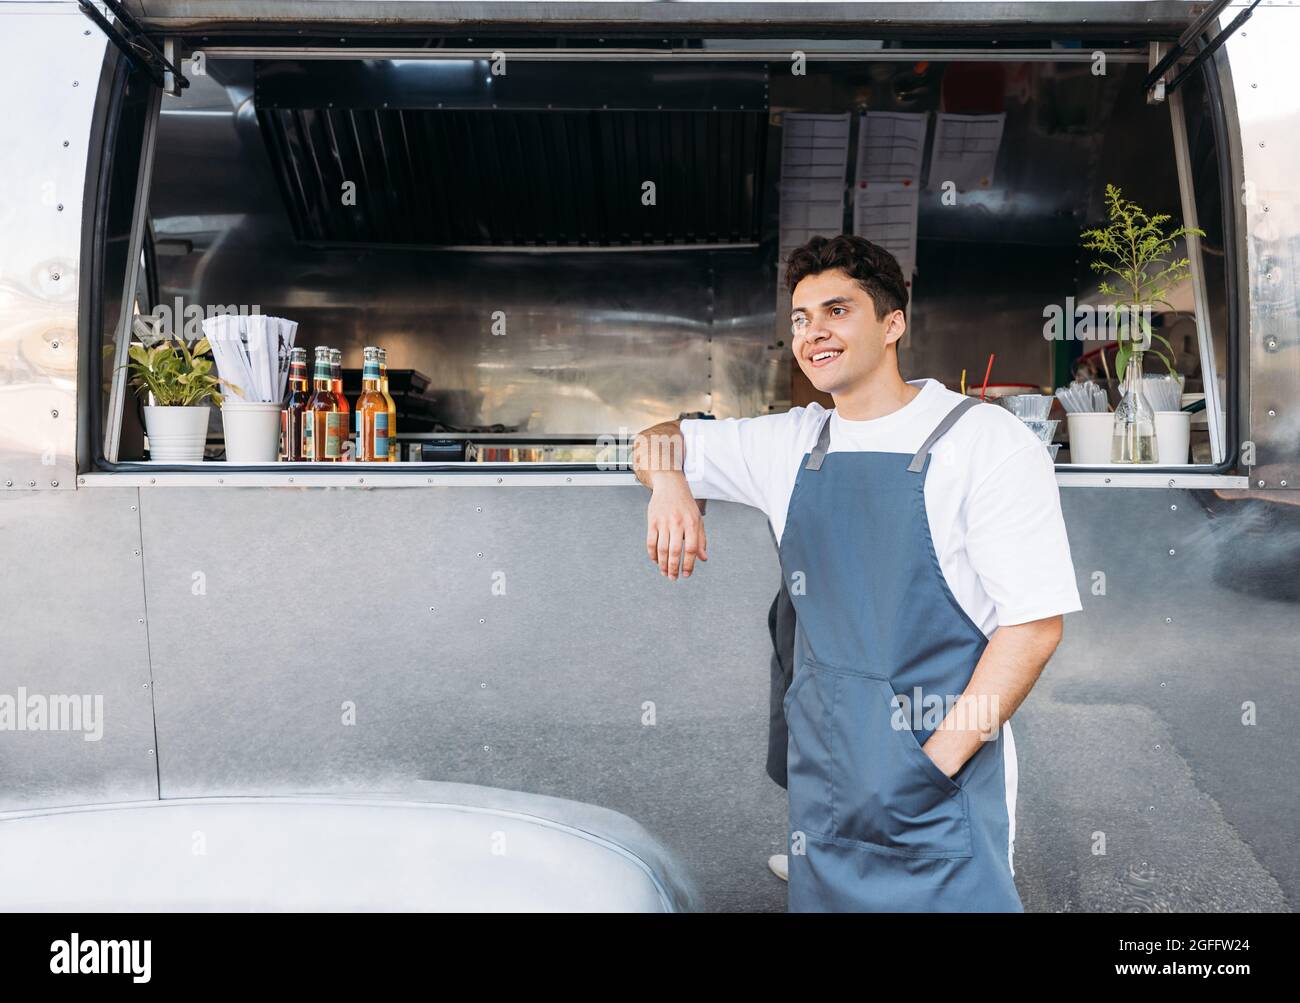 Junger Geschäftsinhaber in einer Schürze. Verkäufer, der sich auf einen Food Truck stützt. Stockfoto